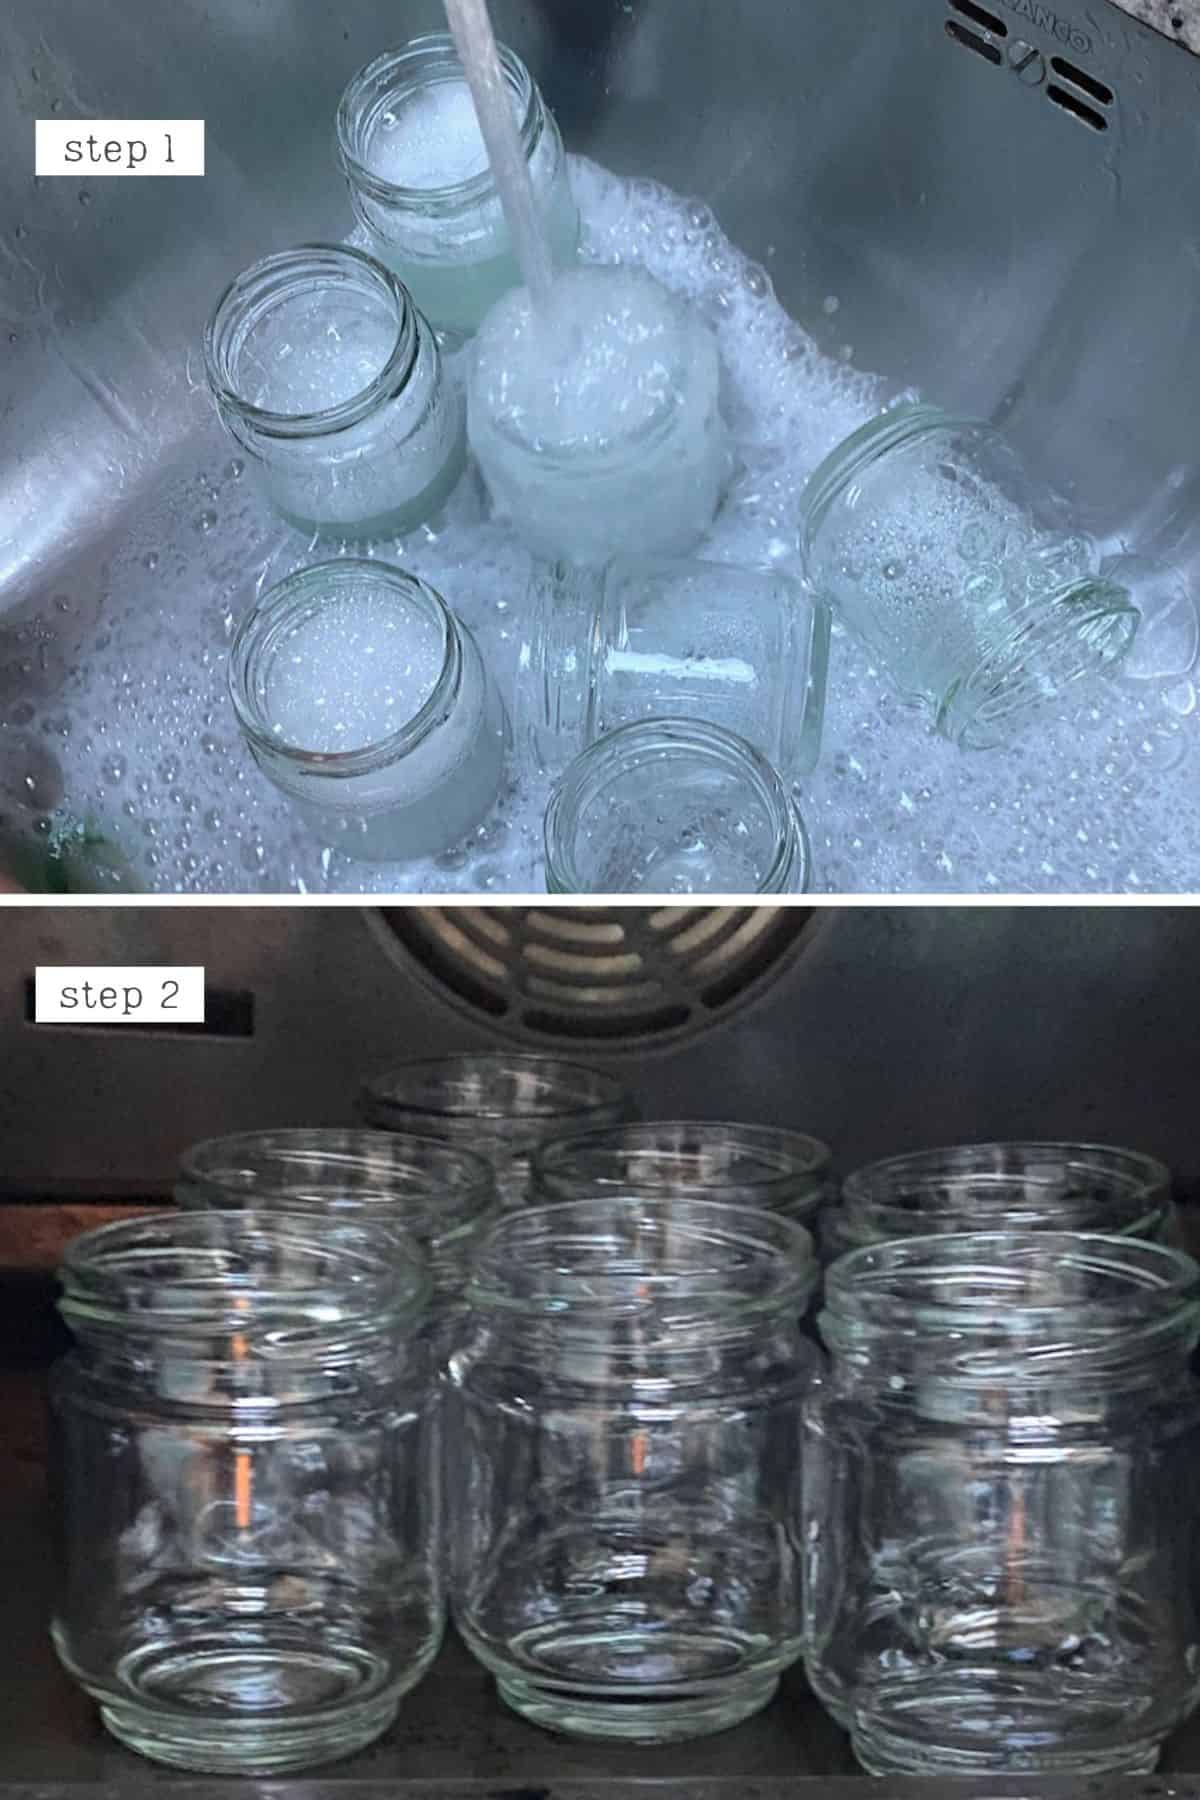 Steps for sterilizing jars